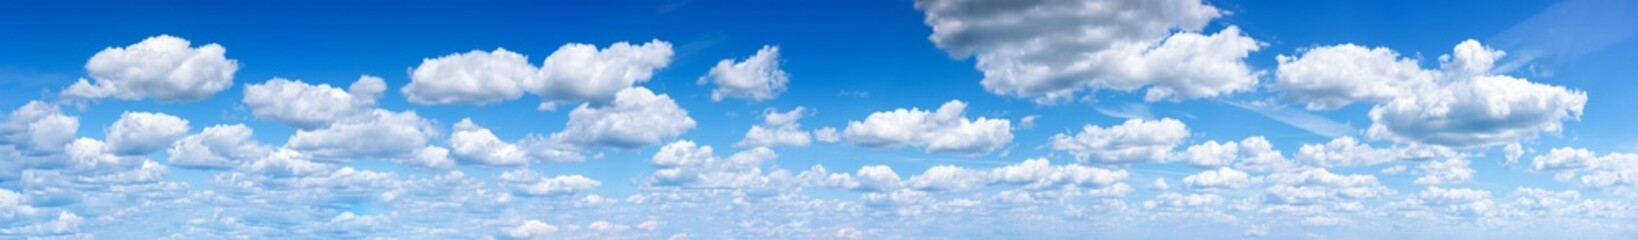 Panorama van de blauwe lucht met wolken